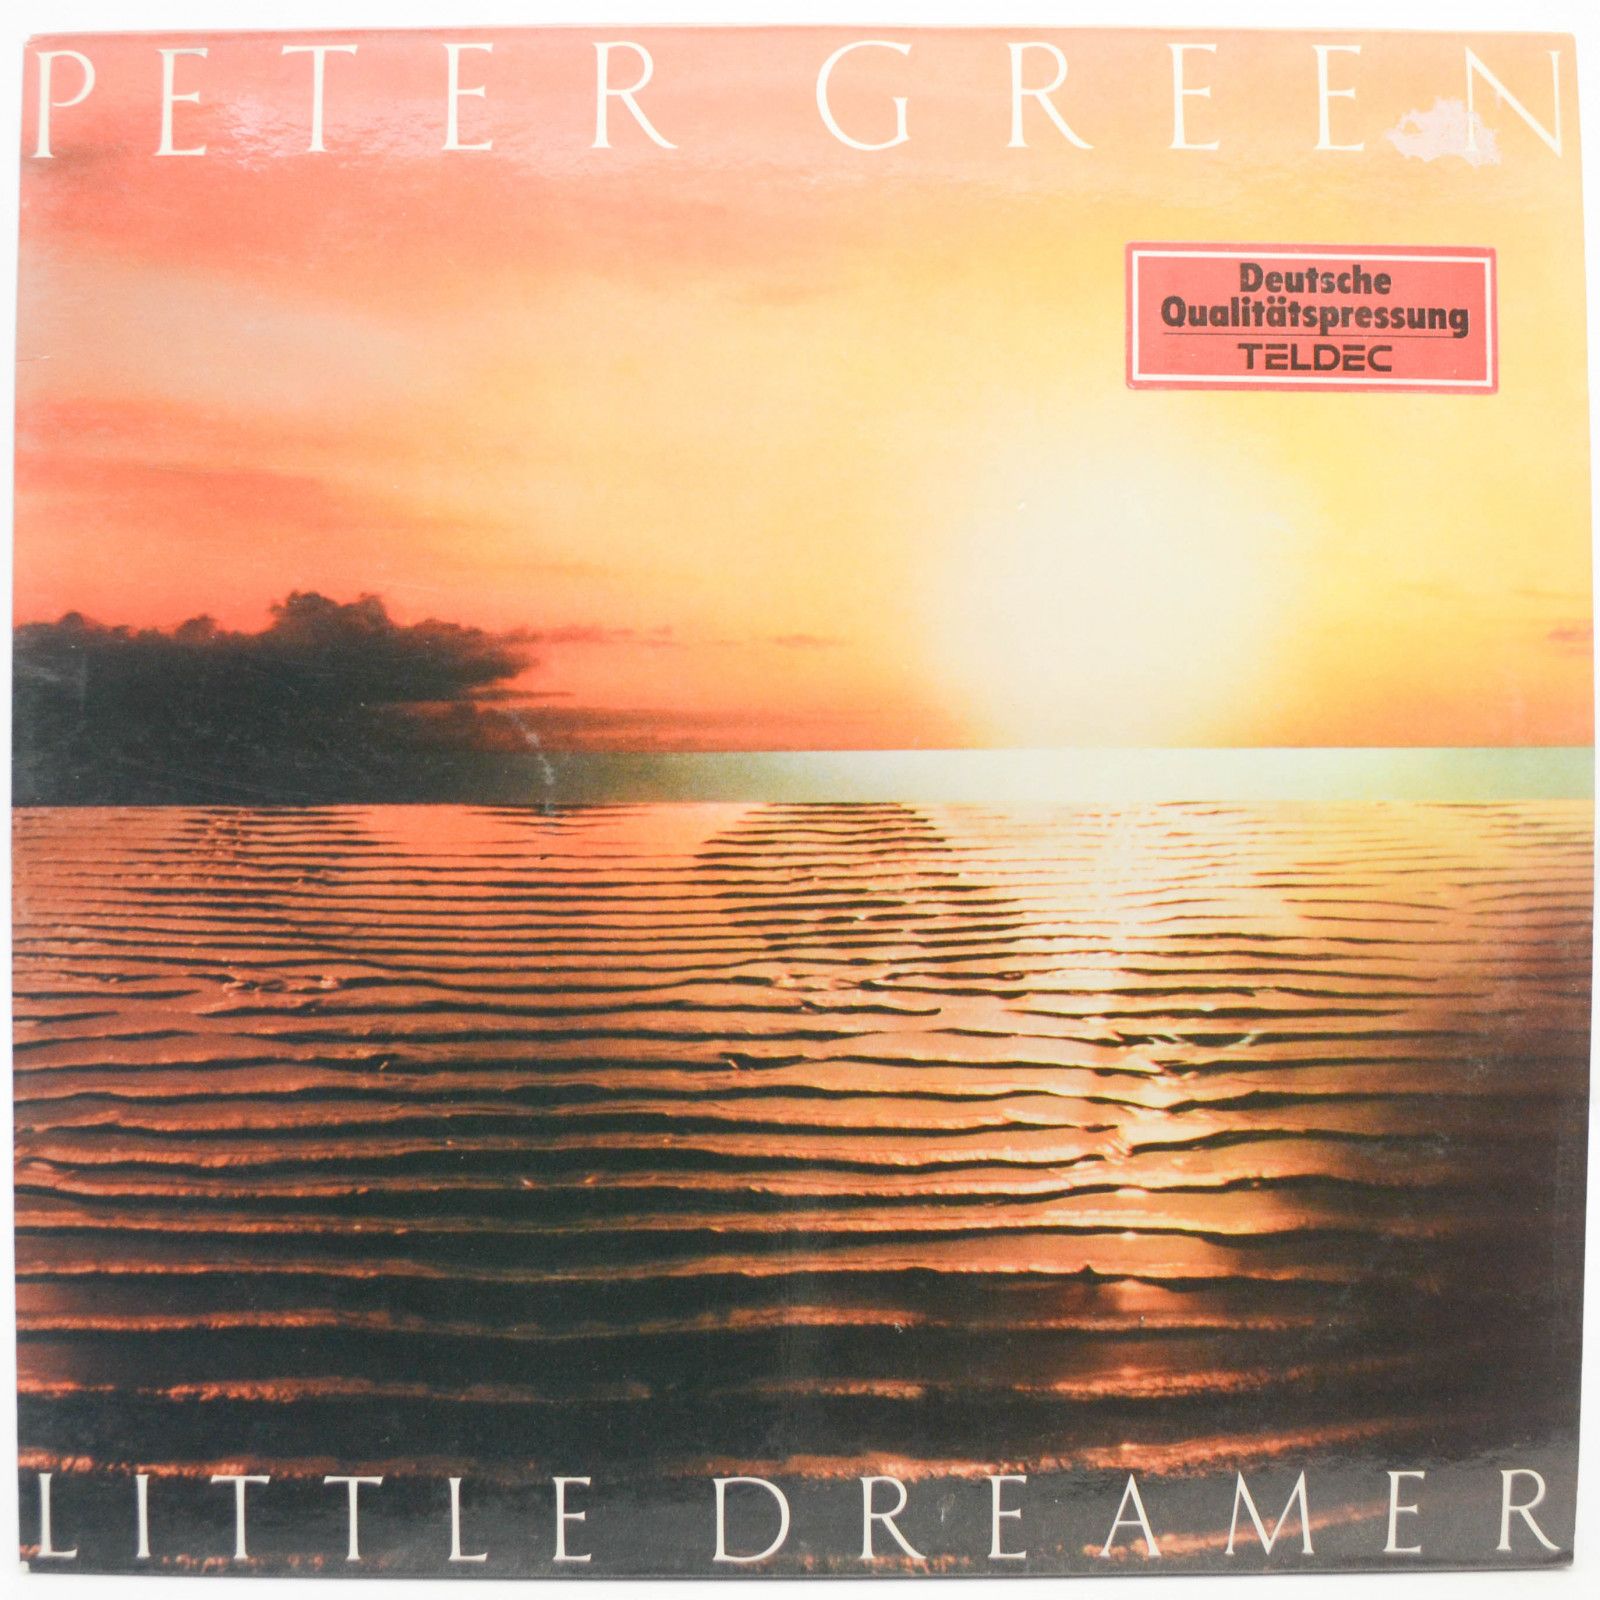 Peter Green — Little Dreamer, 1980